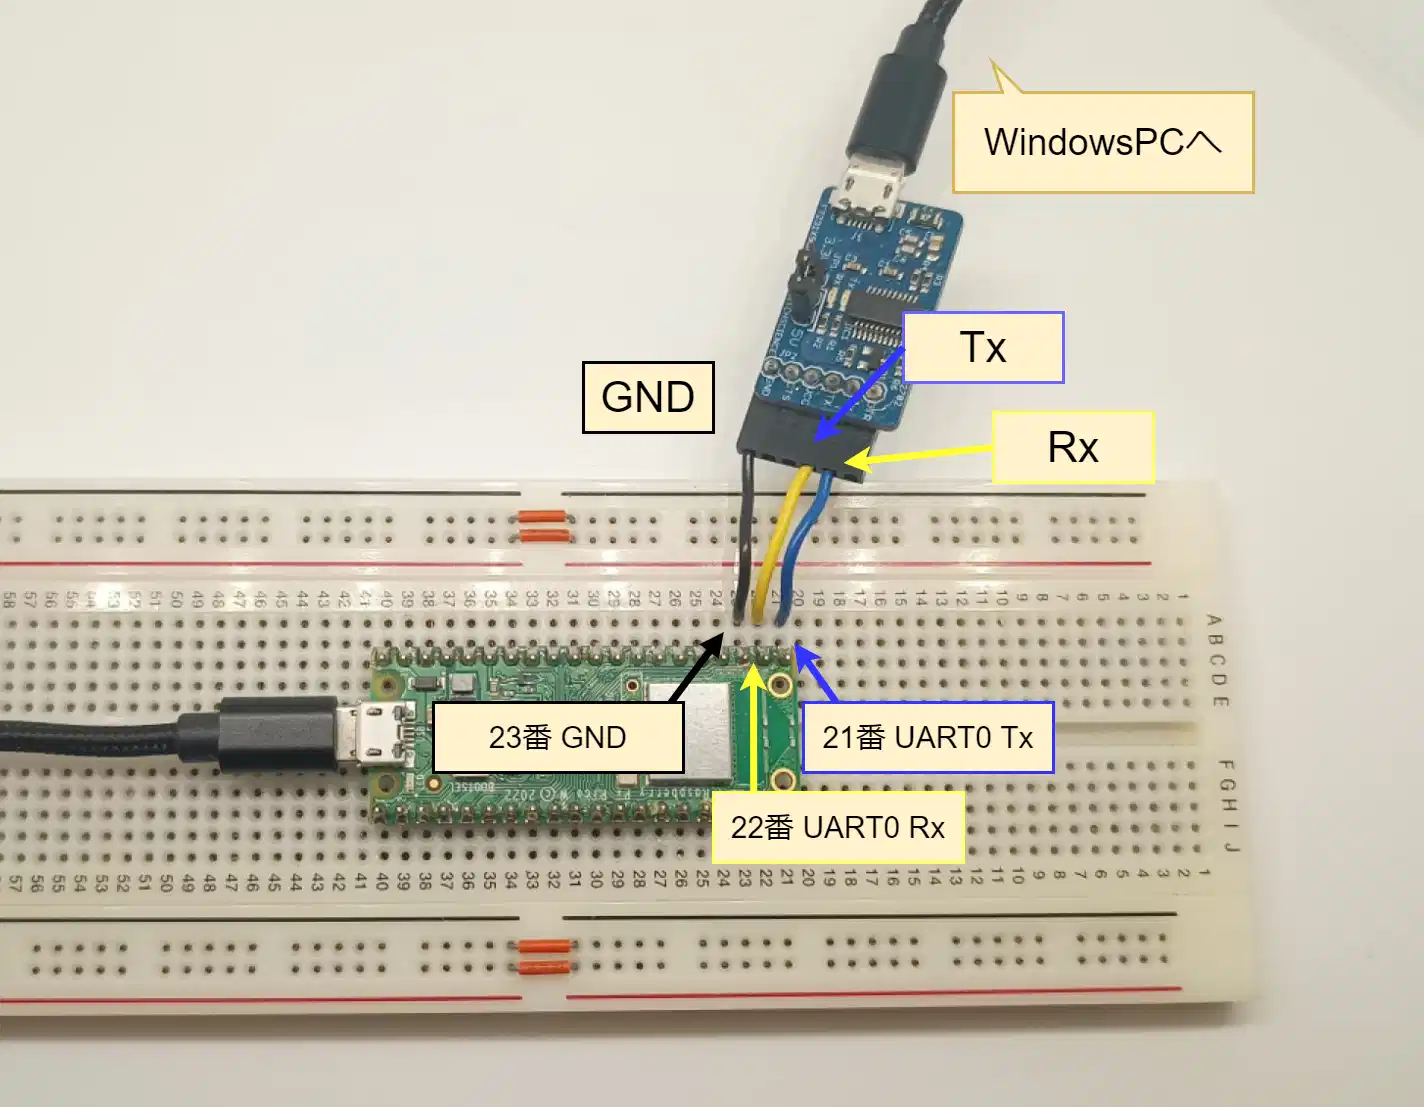 Pico Wとメーターをシリアル通信で接続する方法を説明する画像